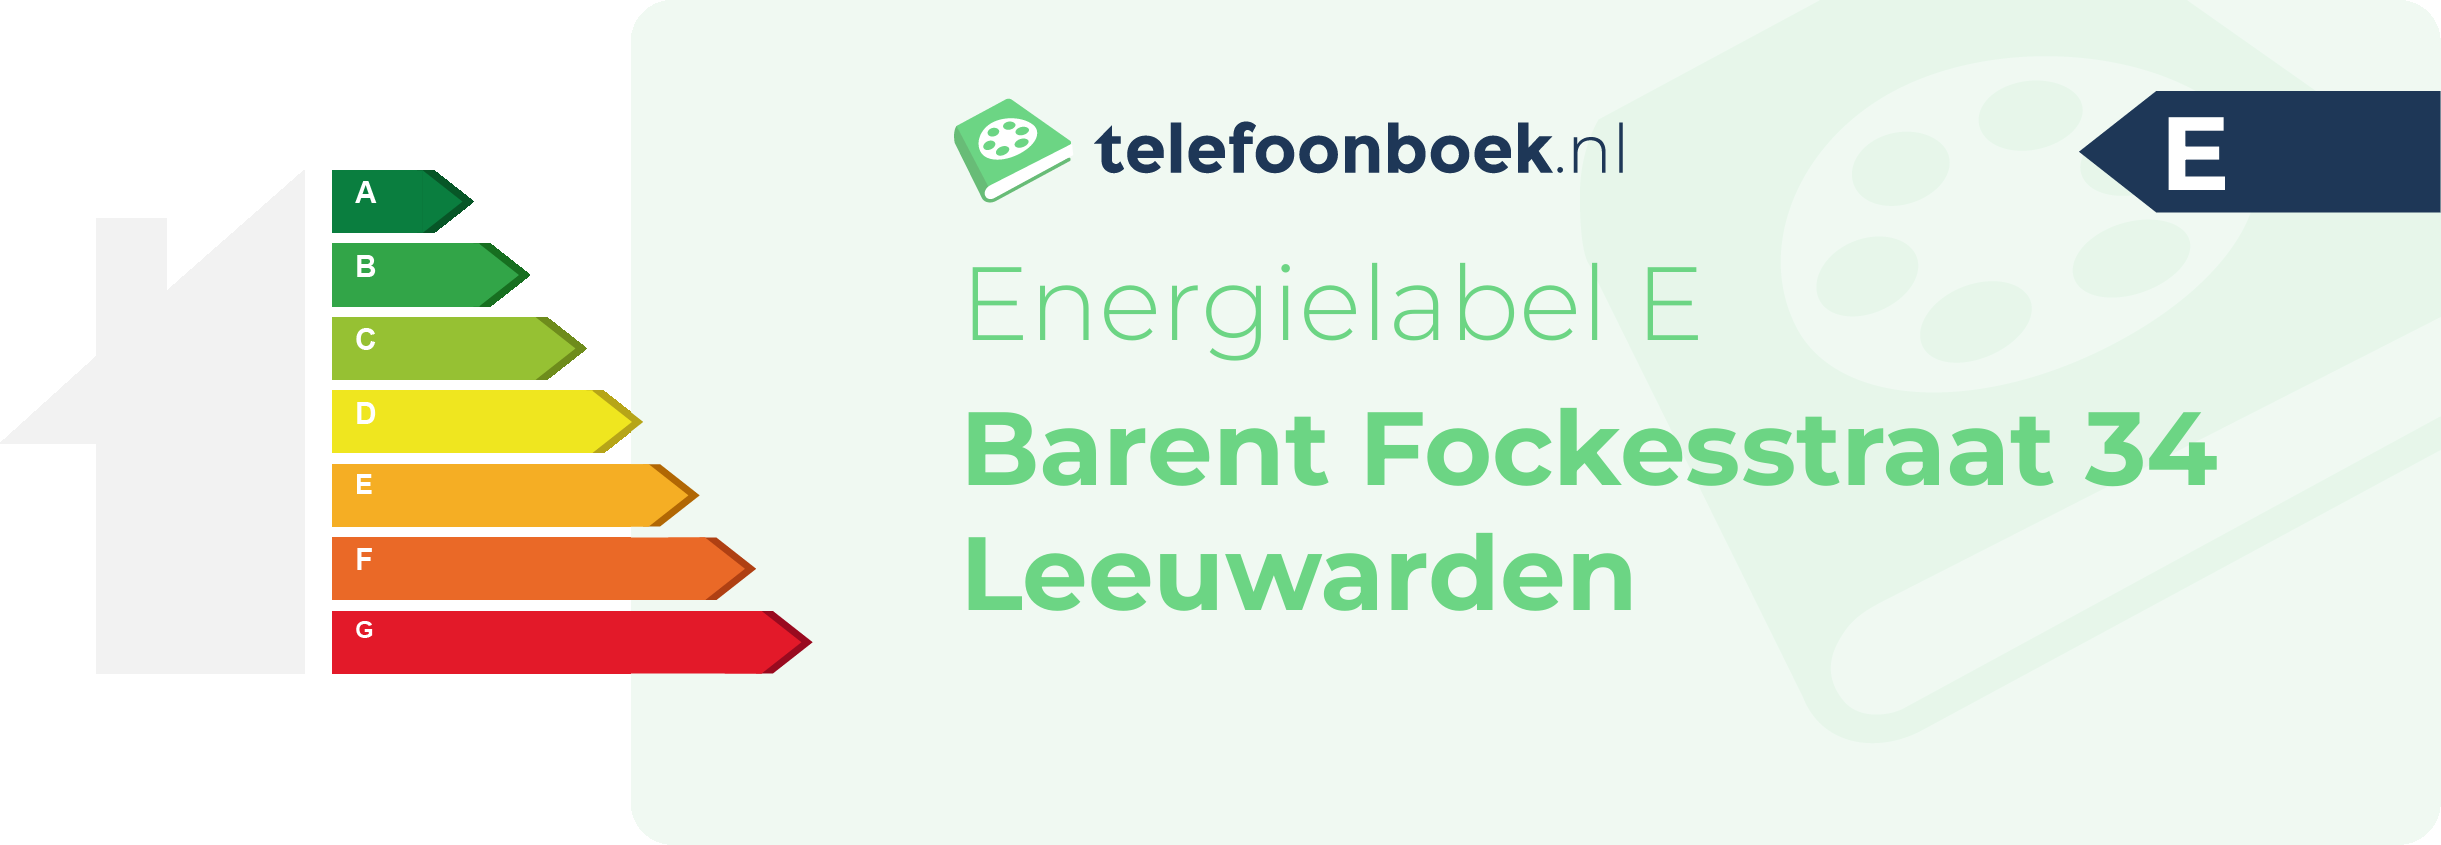 Energielabel Barent Fockesstraat 34 Leeuwarden